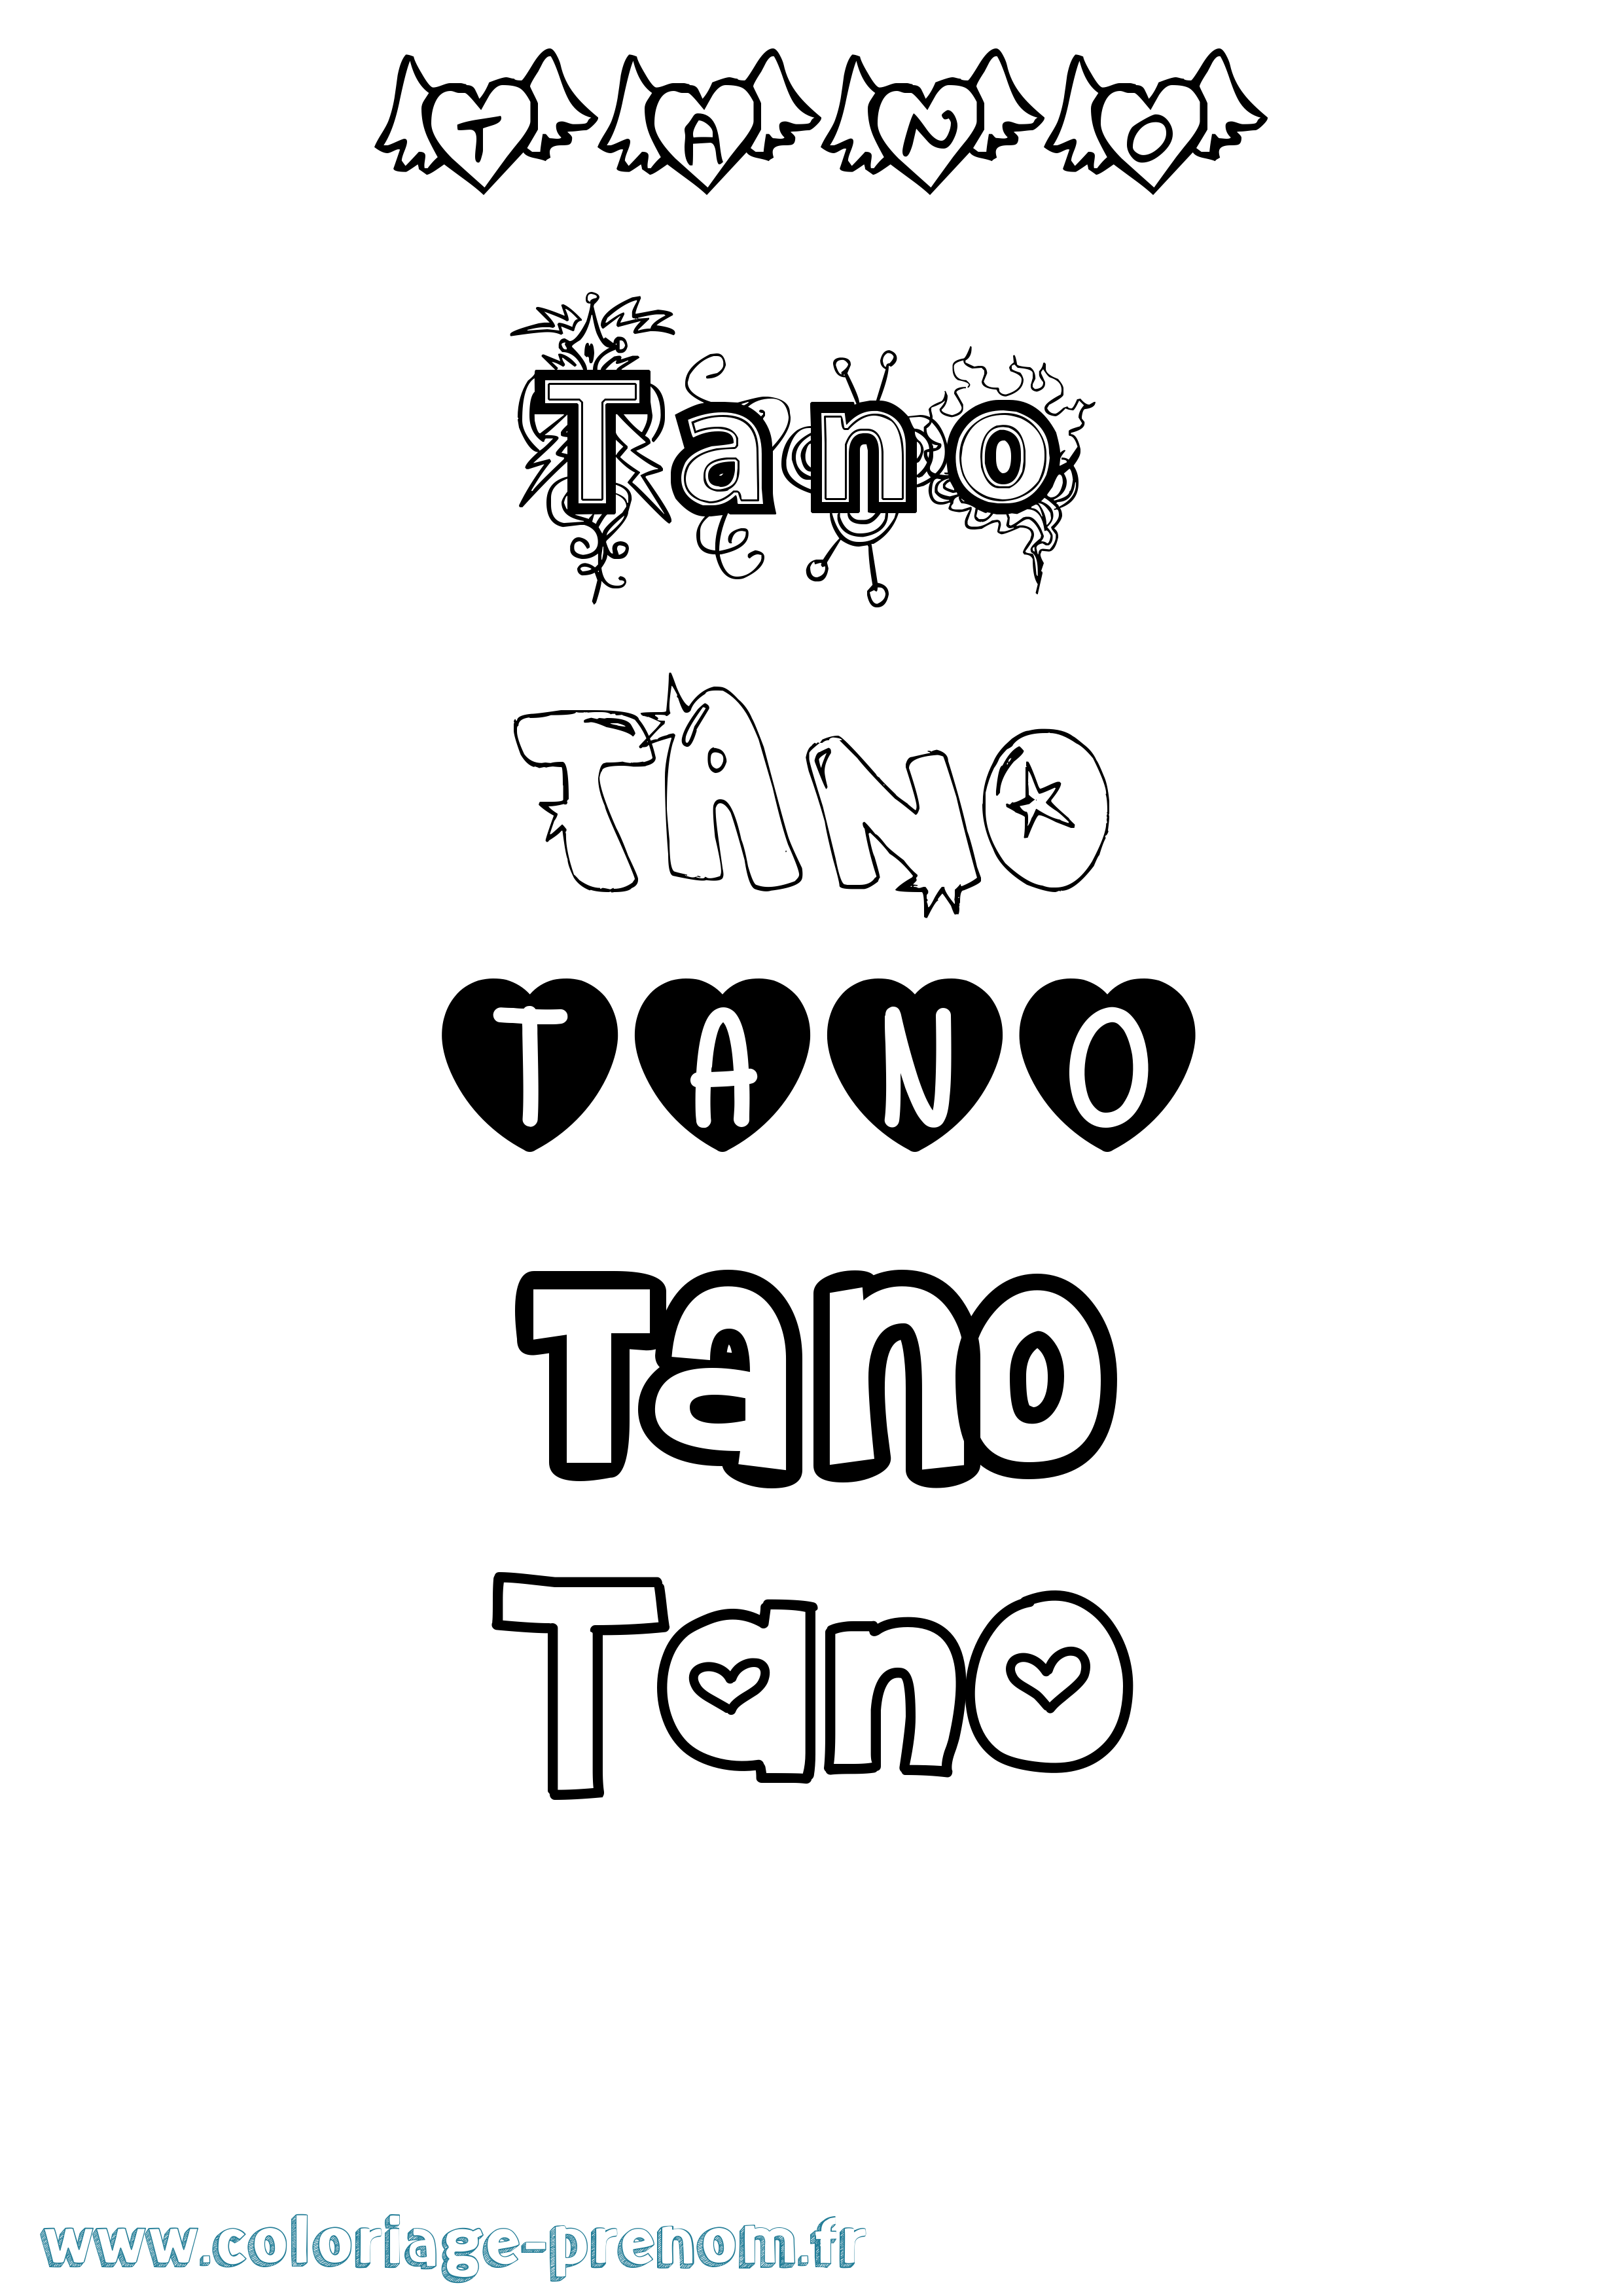 Coloriage prénom Tano Girly